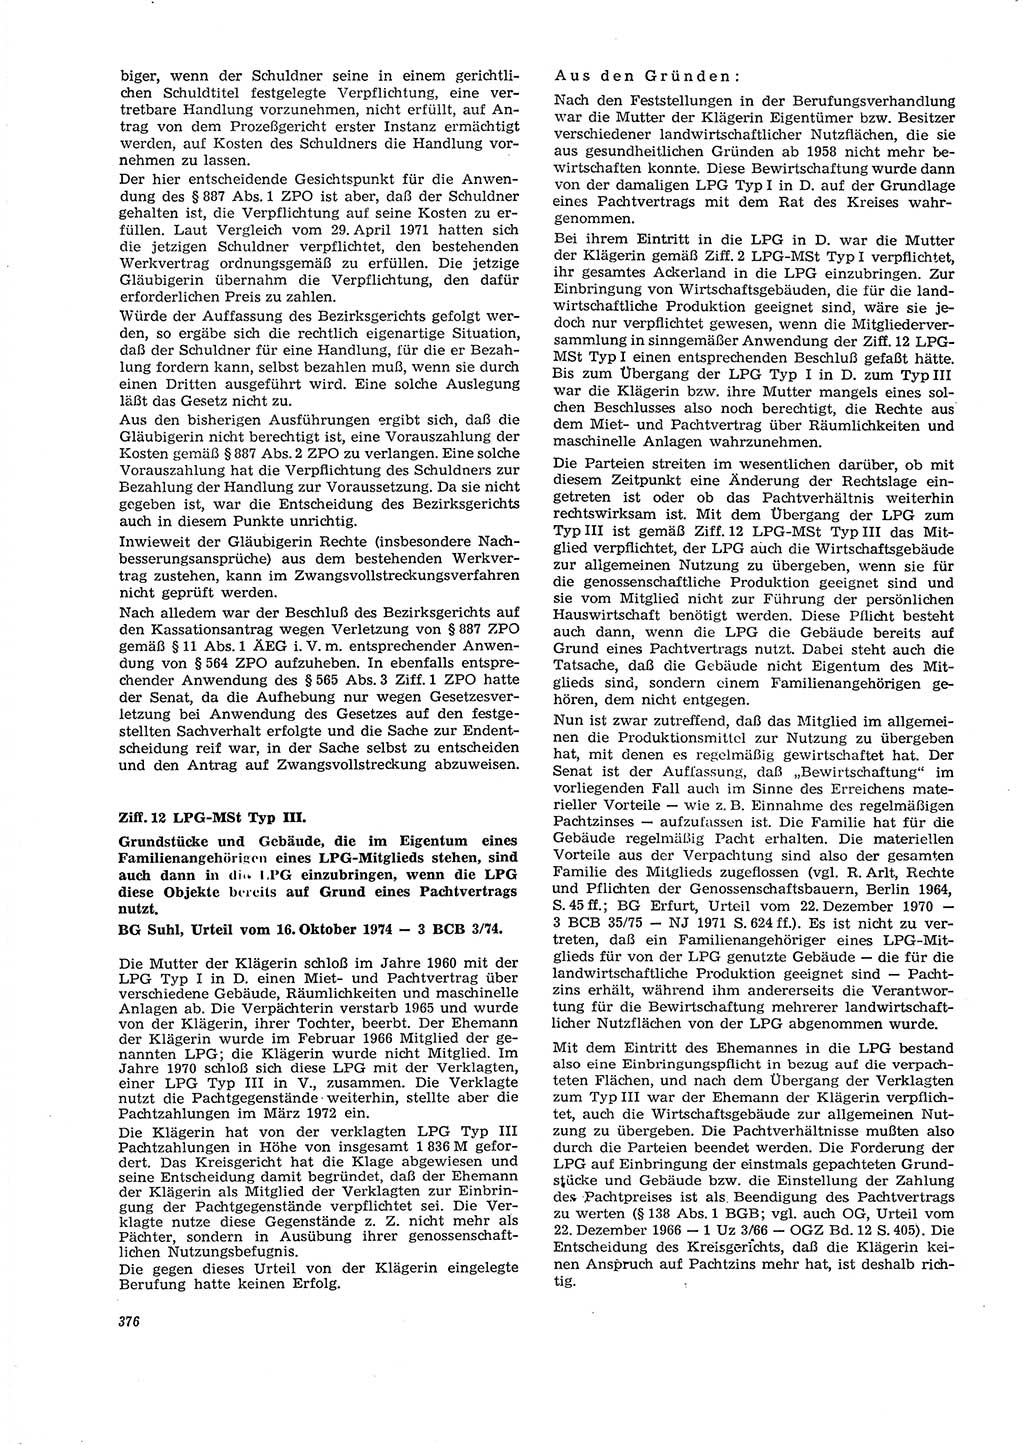 Neue Justiz (NJ), Zeitschrift für Recht und Rechtswissenschaft [Deutsche Demokratische Republik (DDR)], 29. Jahrgang 1975, Seite 376 (NJ DDR 1975, S. 376)